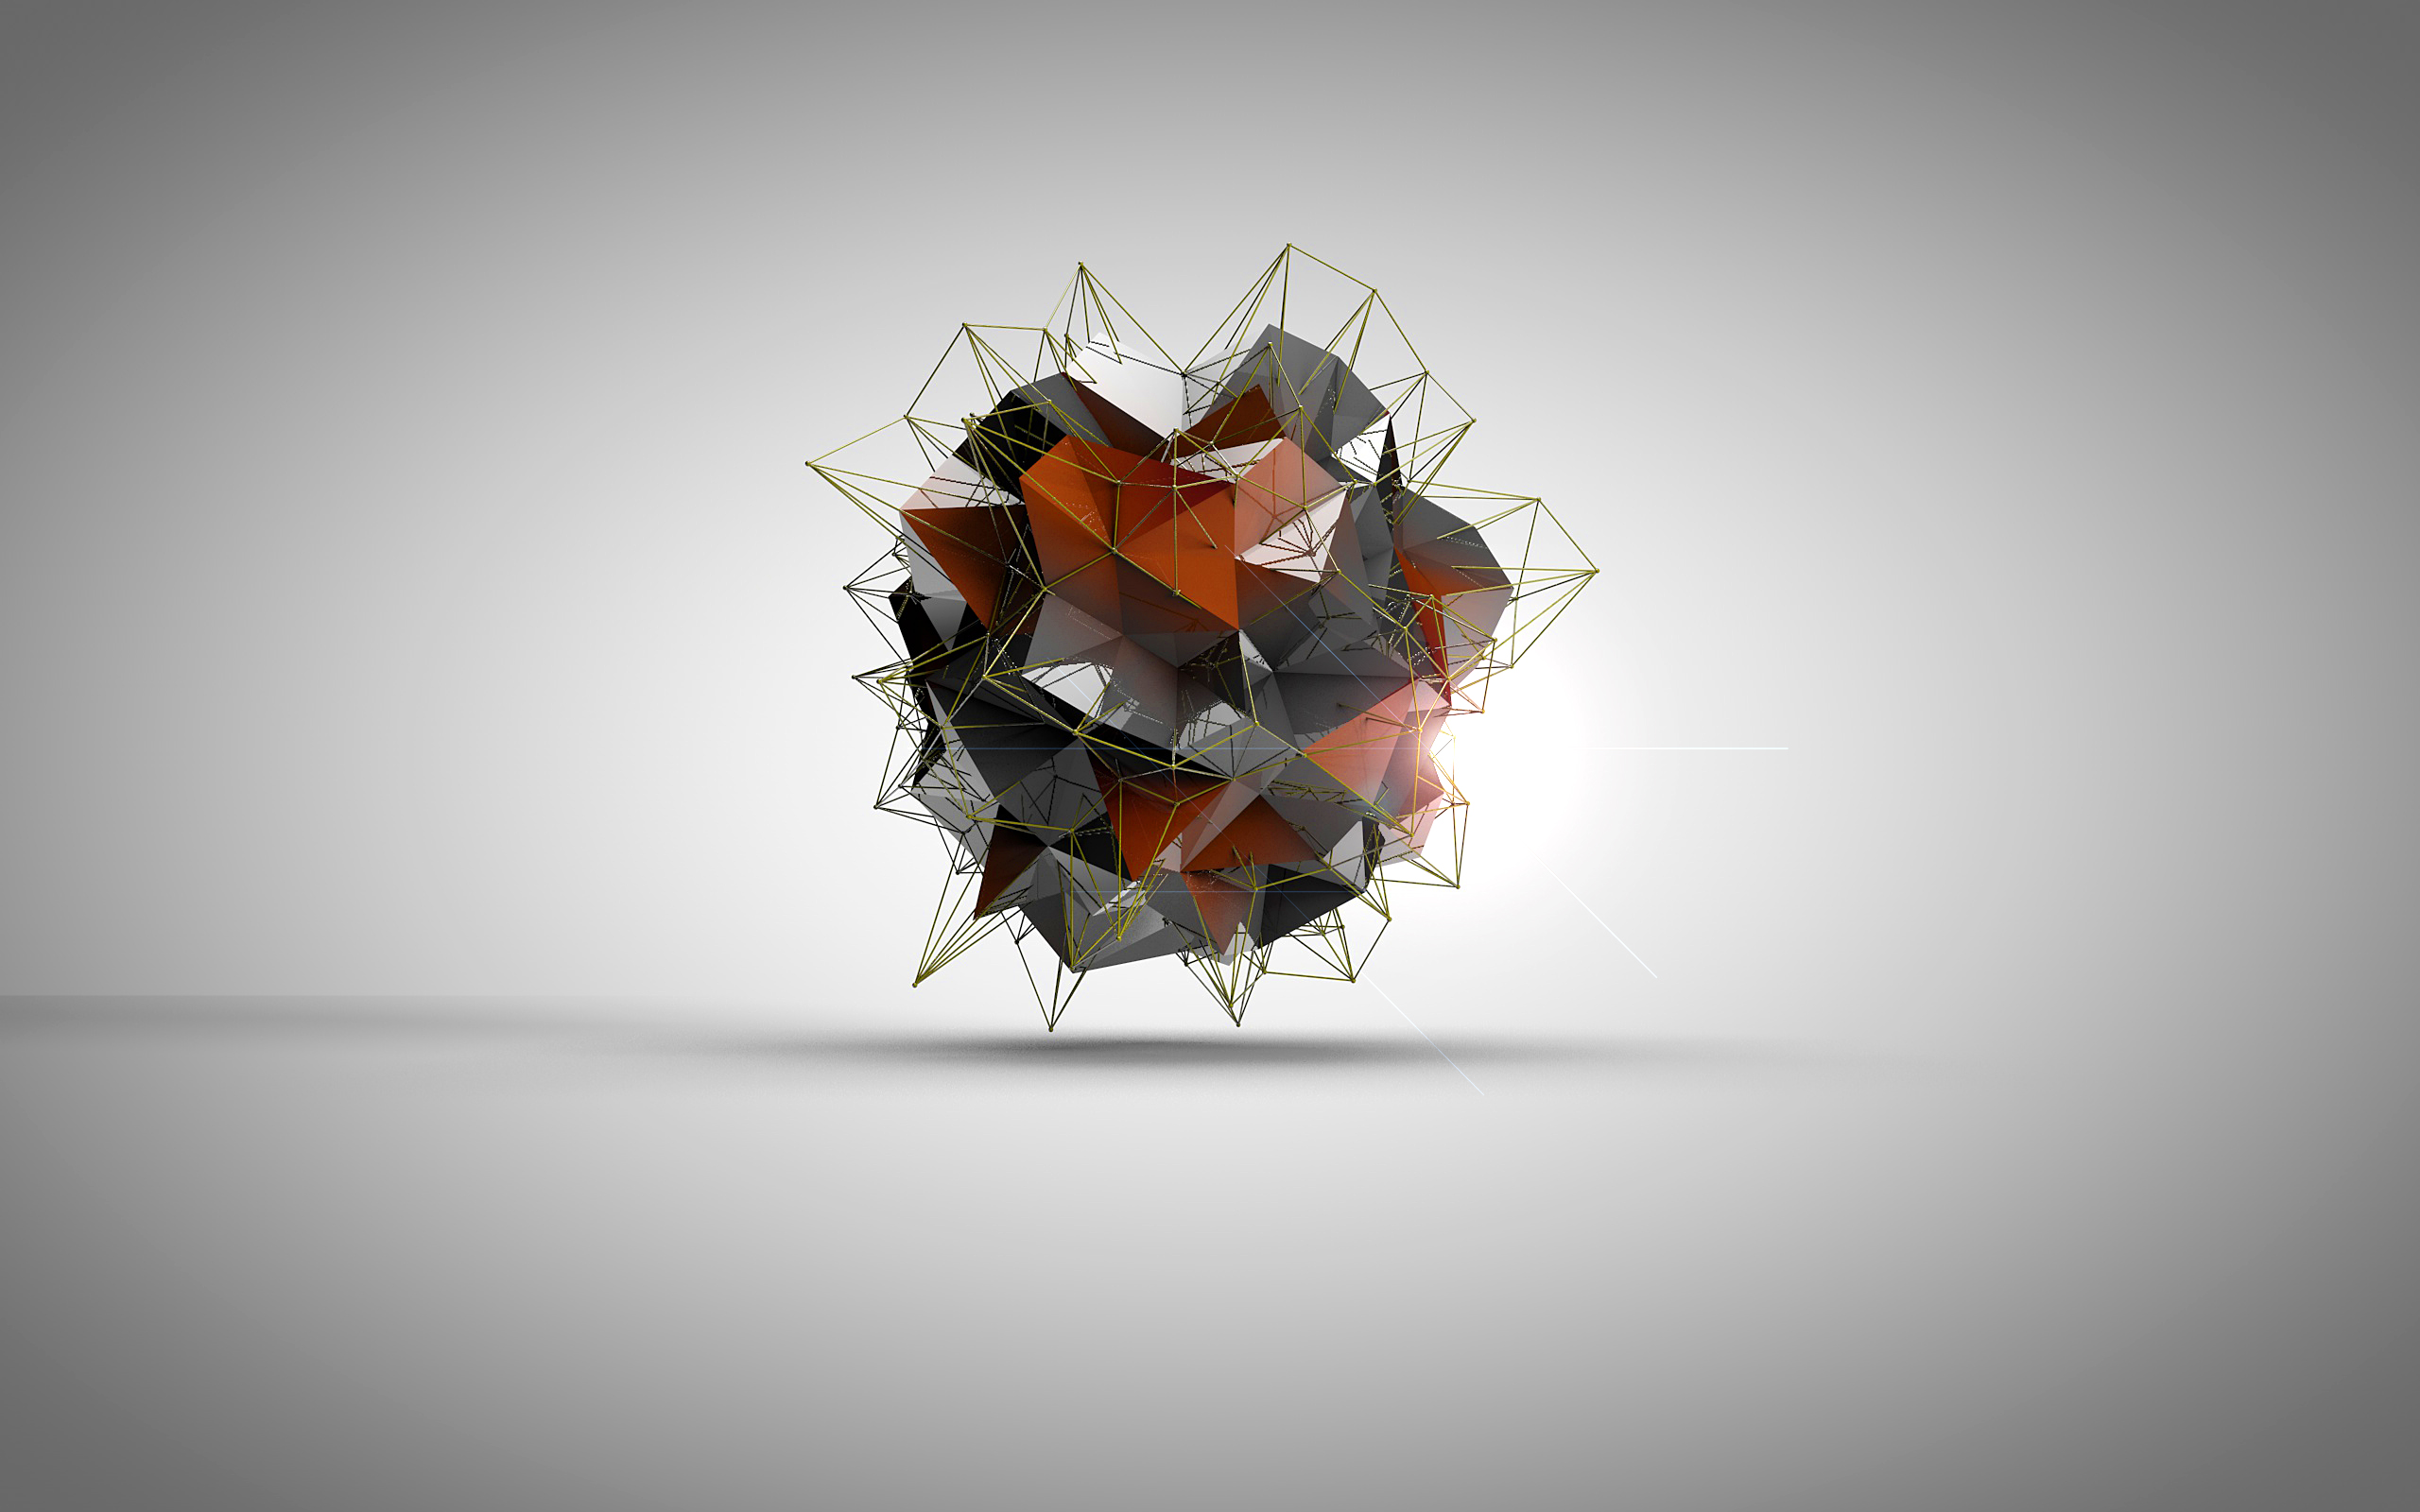 Icosahedron Desktop Background: Hãy kết hợp giữa sáng tạo và tính toán để tạo nên một bức hình độc đáo cho màn hình máy tính của bạn. Với hình ảnh của chúng tôi về một hình khối tinh thể đa diện, bạn sẽ được trải nghiệm không gian mới mẻ, đầy màu sắc và sự lôi cuốn đặc biệt. Hãy thưởng thức và cảm nhận!